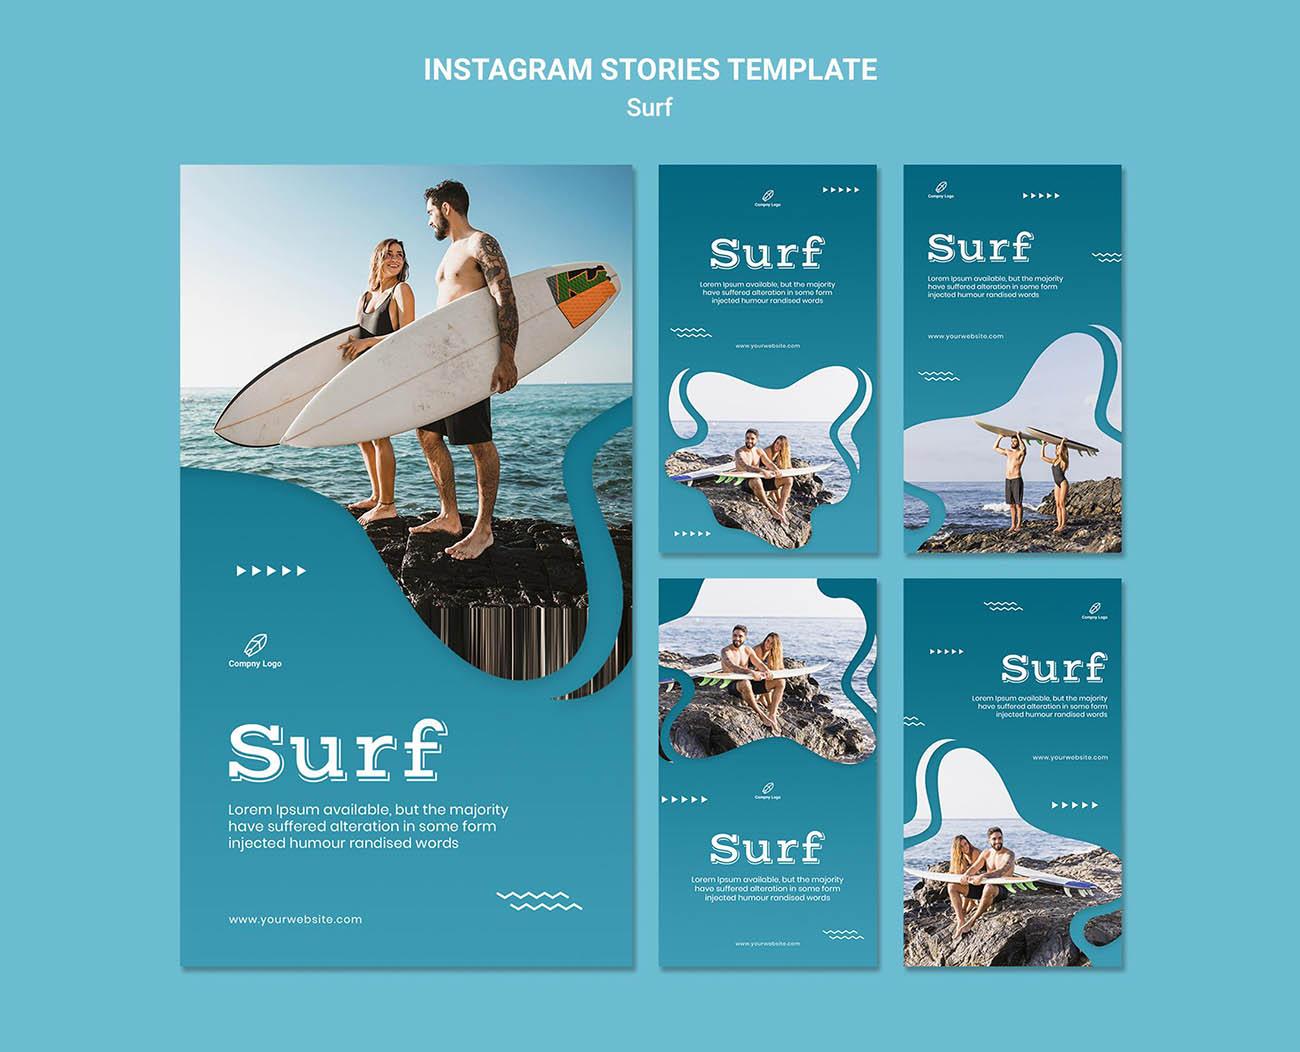 冲浪surf-relax-instagram-stories-template